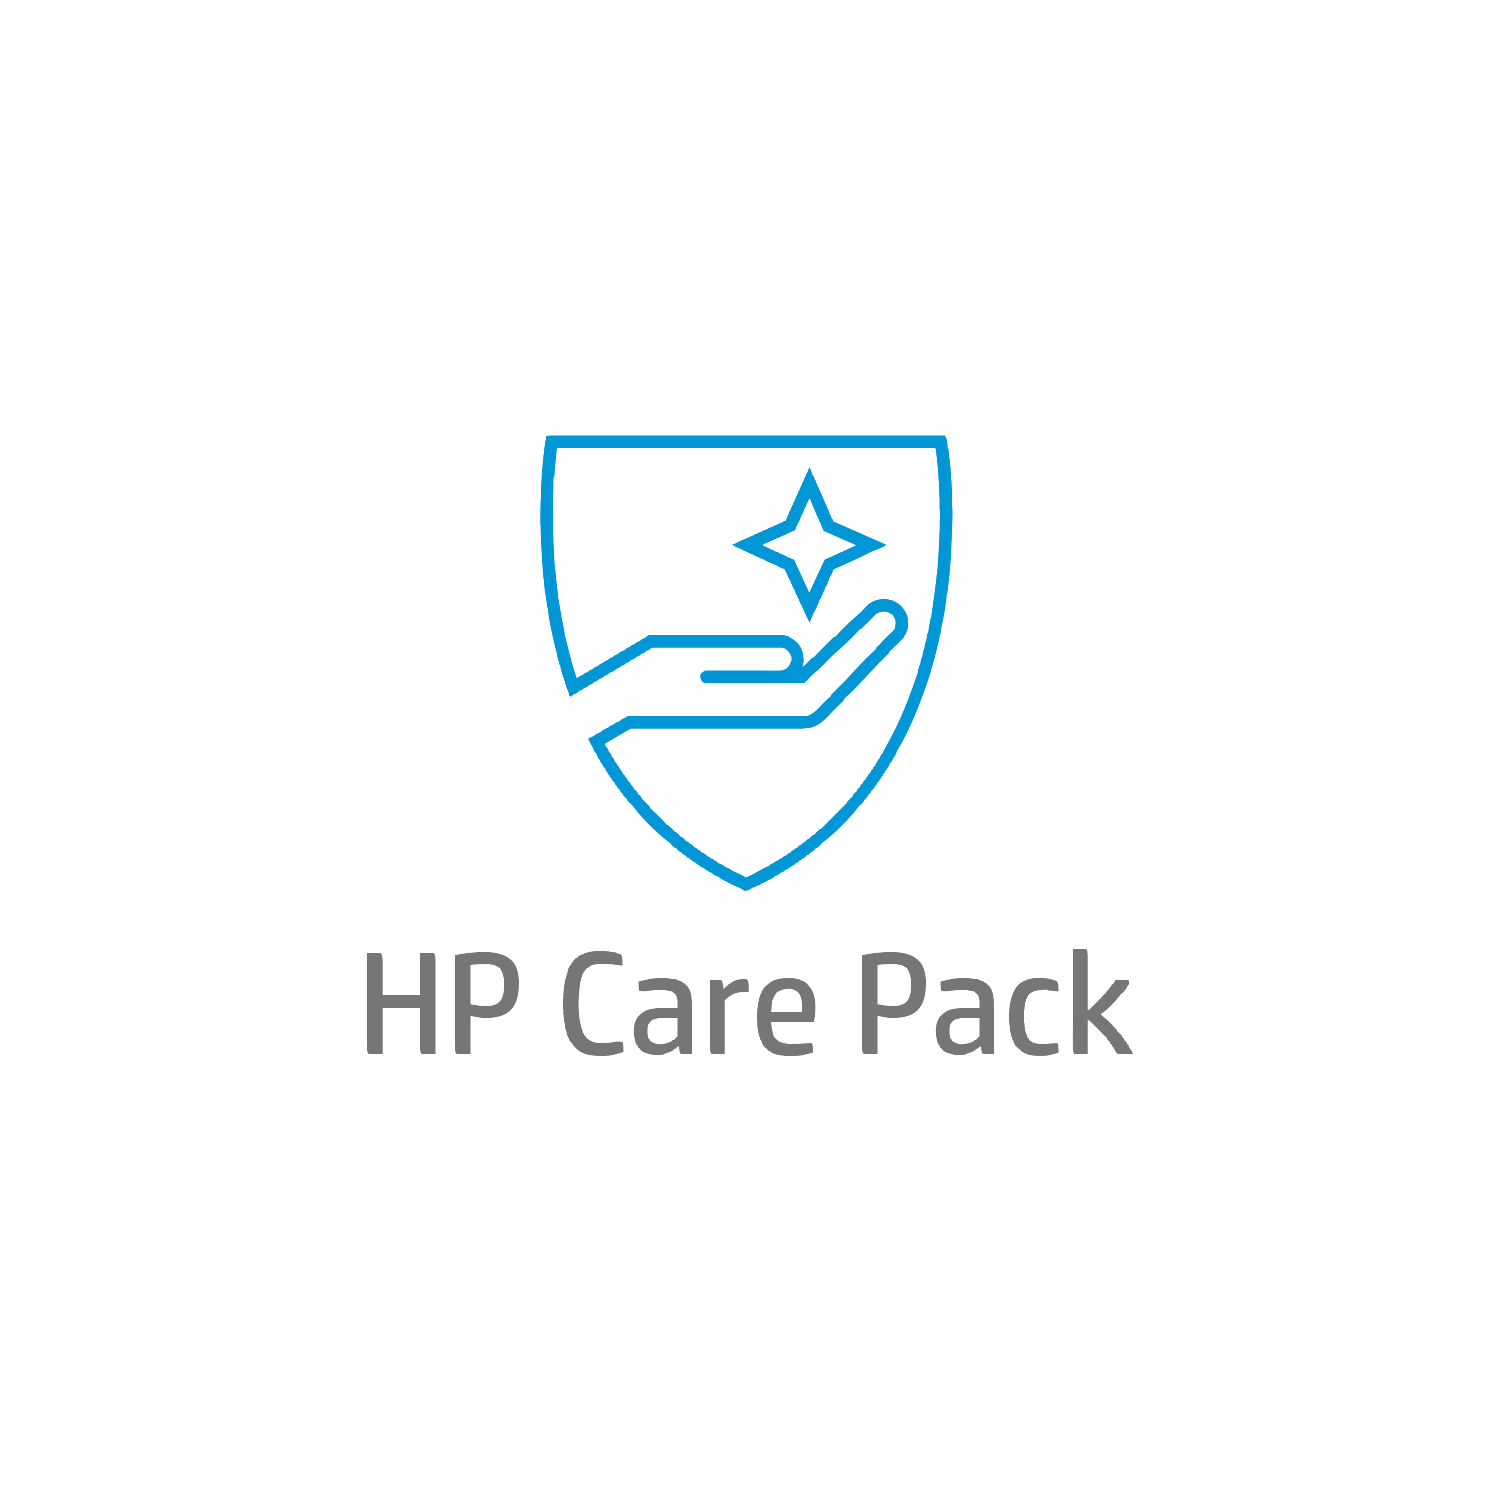 Bild von HP 3 year Active Care Next Business Day Onsite Notebook Hardware Support - 3 Jahr(e)